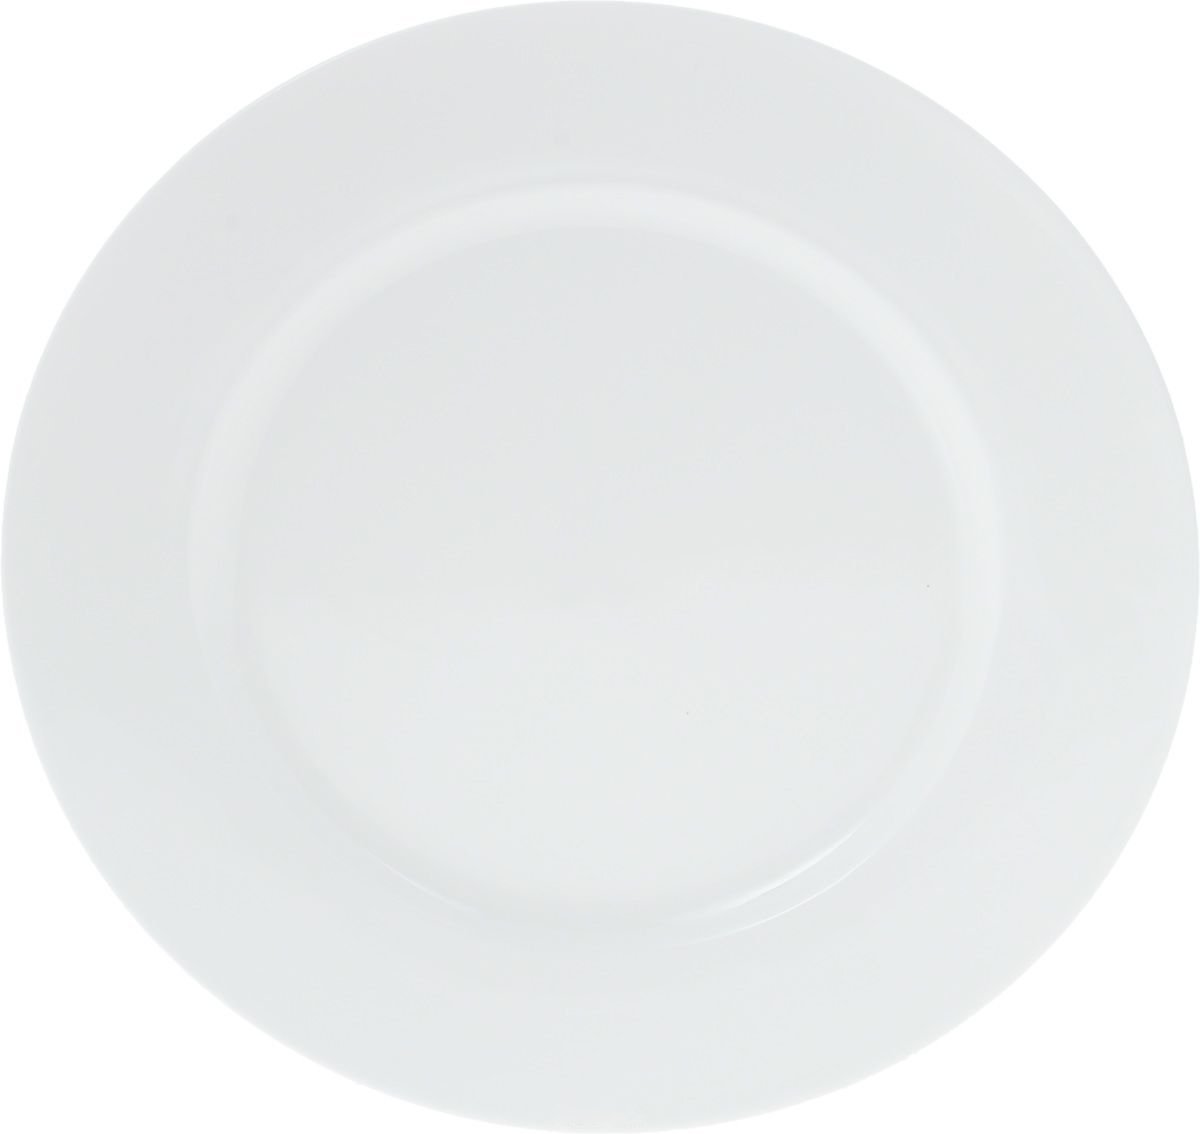 Set of 6 Fine Porcelain Dinner Plates 9" 